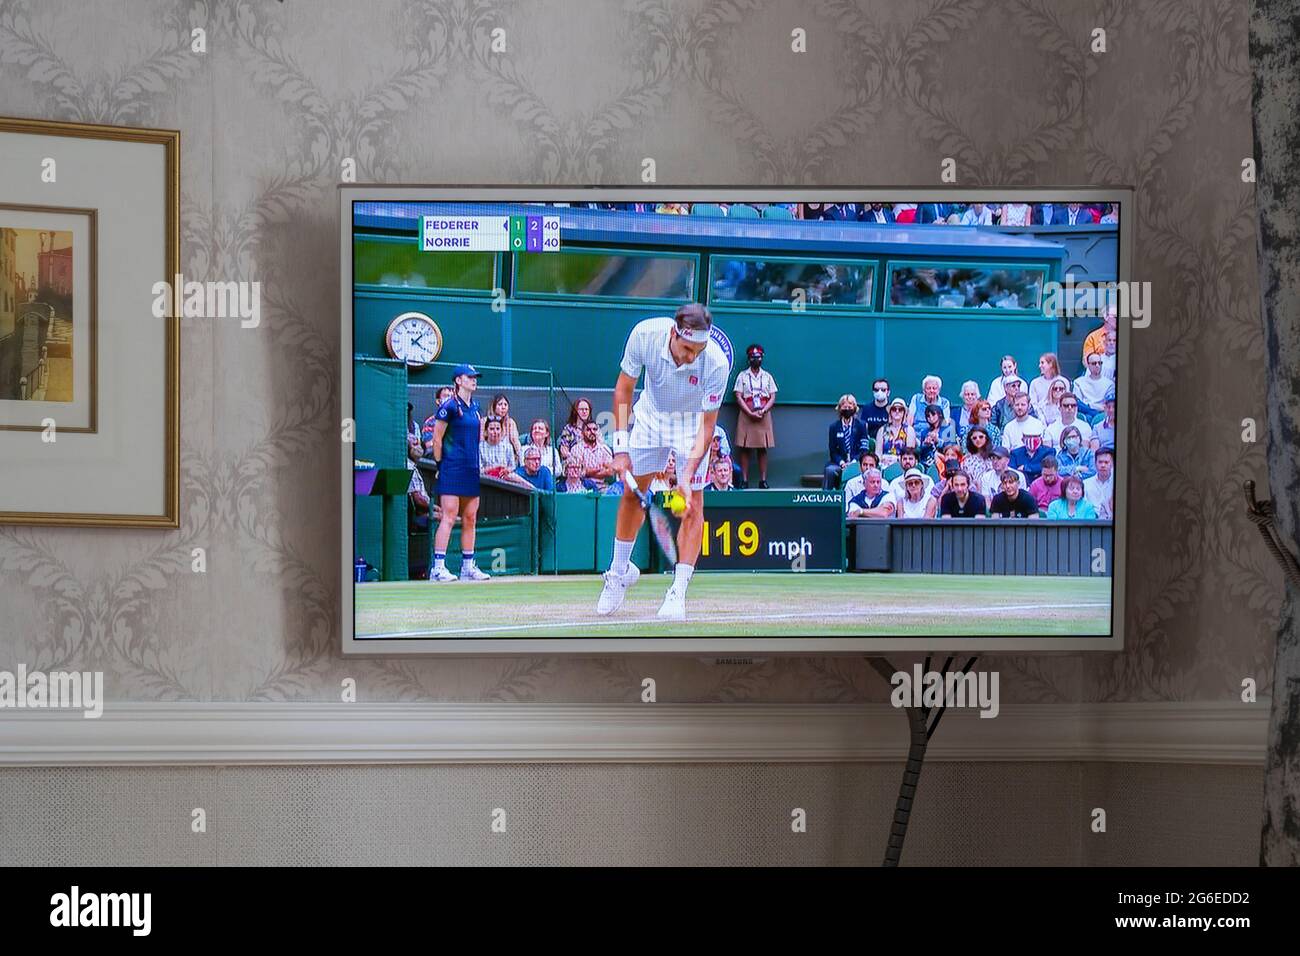 Copertura BBC di Wimbledon 2021 su una tv a schermo piatto su una parete in una sala in una casa in Inghilterra. La partita mostrata è Federer vs Norrie. Luglio 2021 Foto Stock